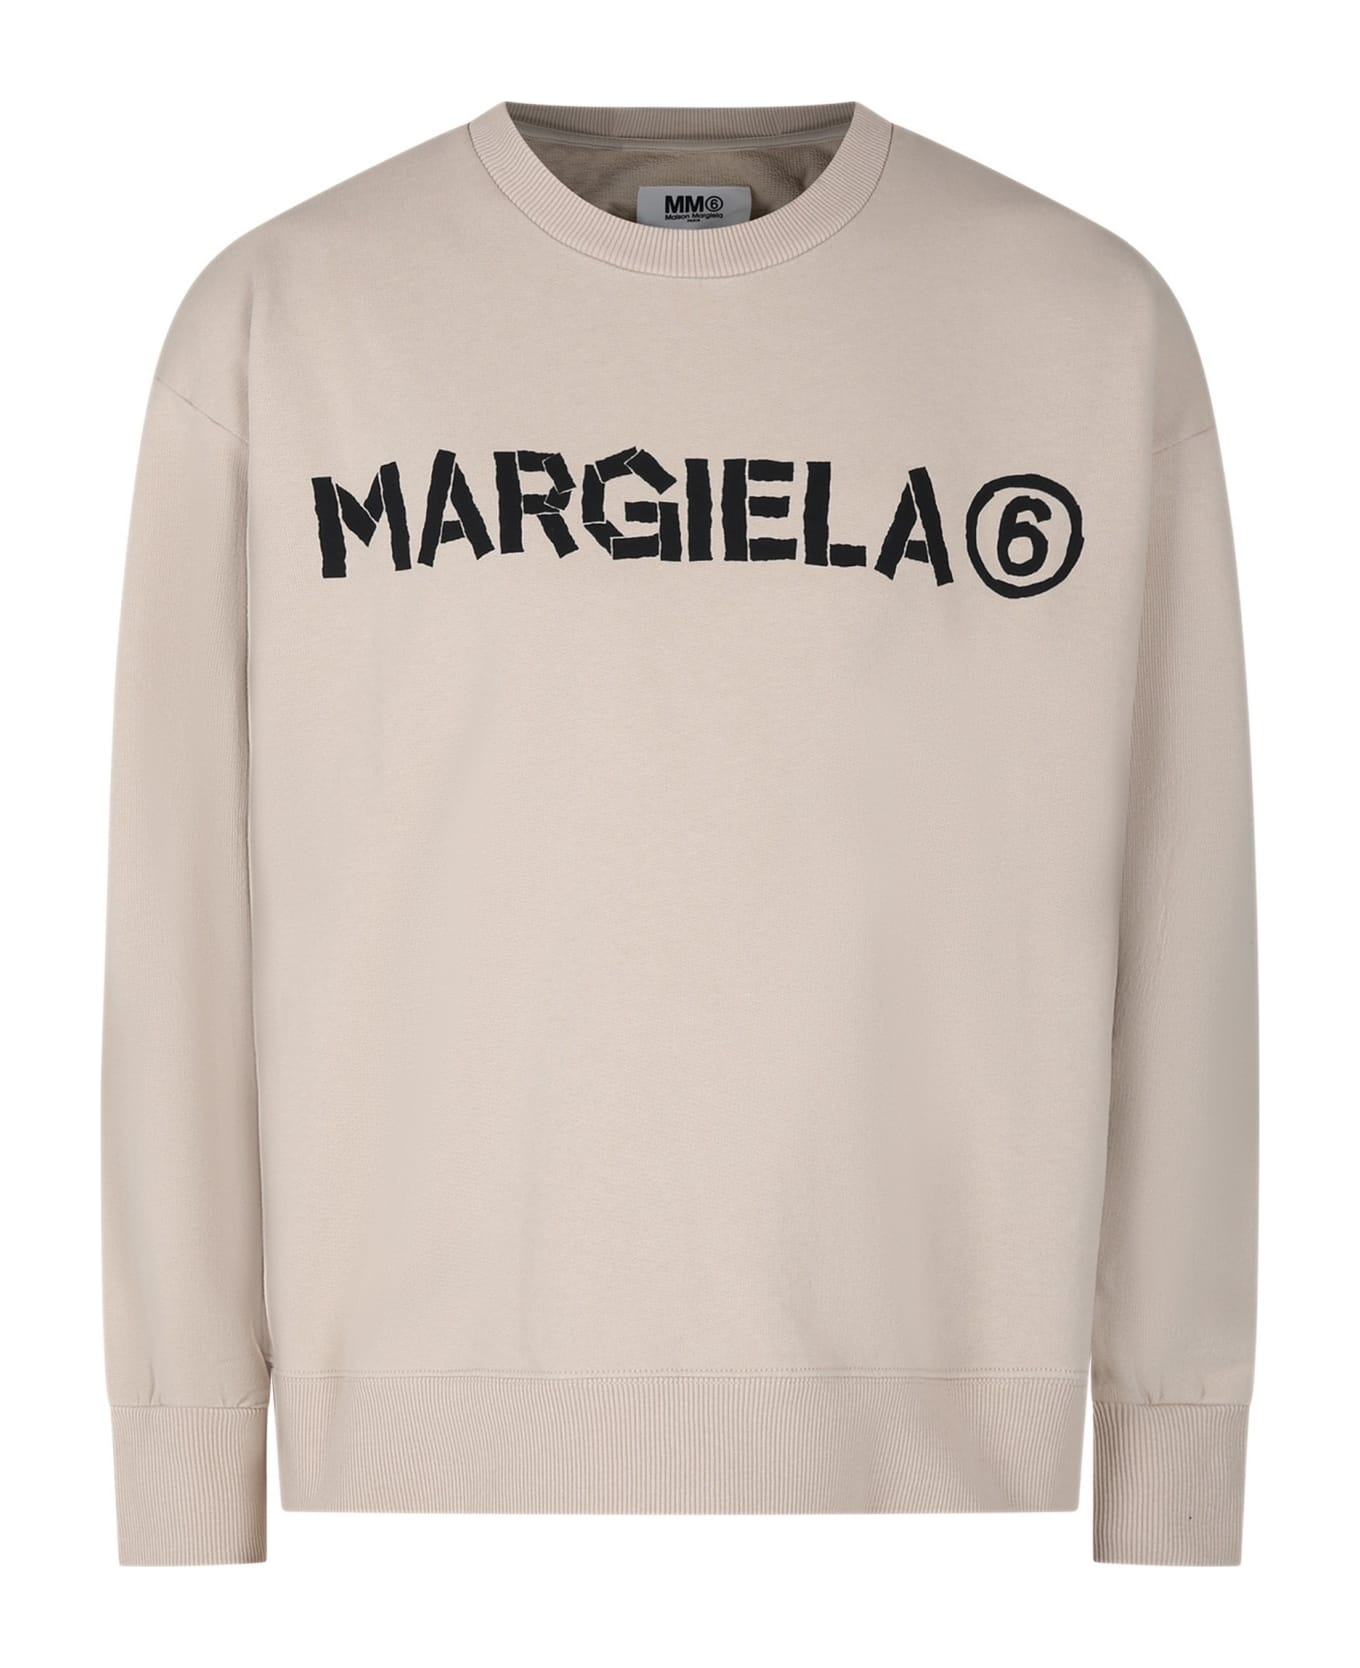 MM6 Maison Margiela Beige Sweatshirt For Kids - Beige